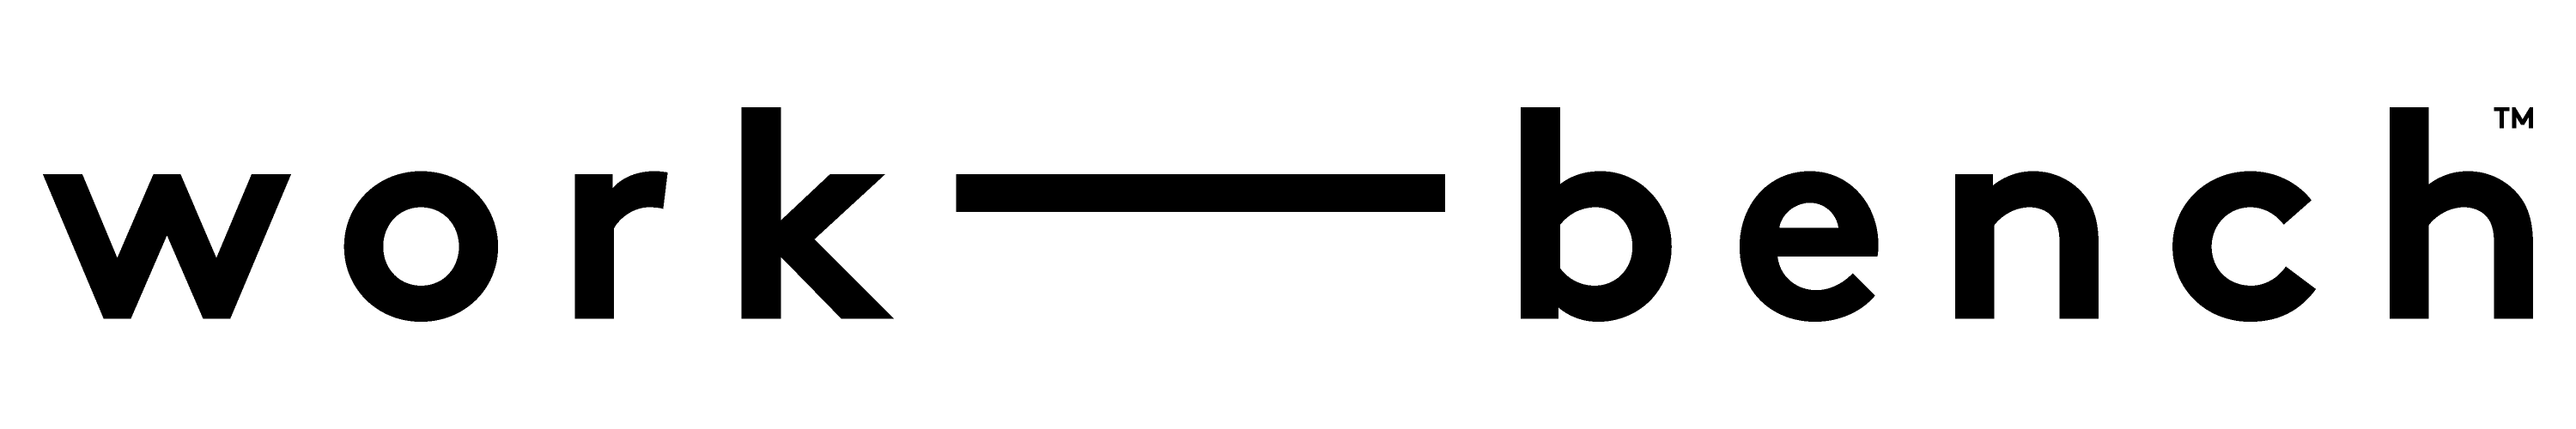 Work-Bench Logo